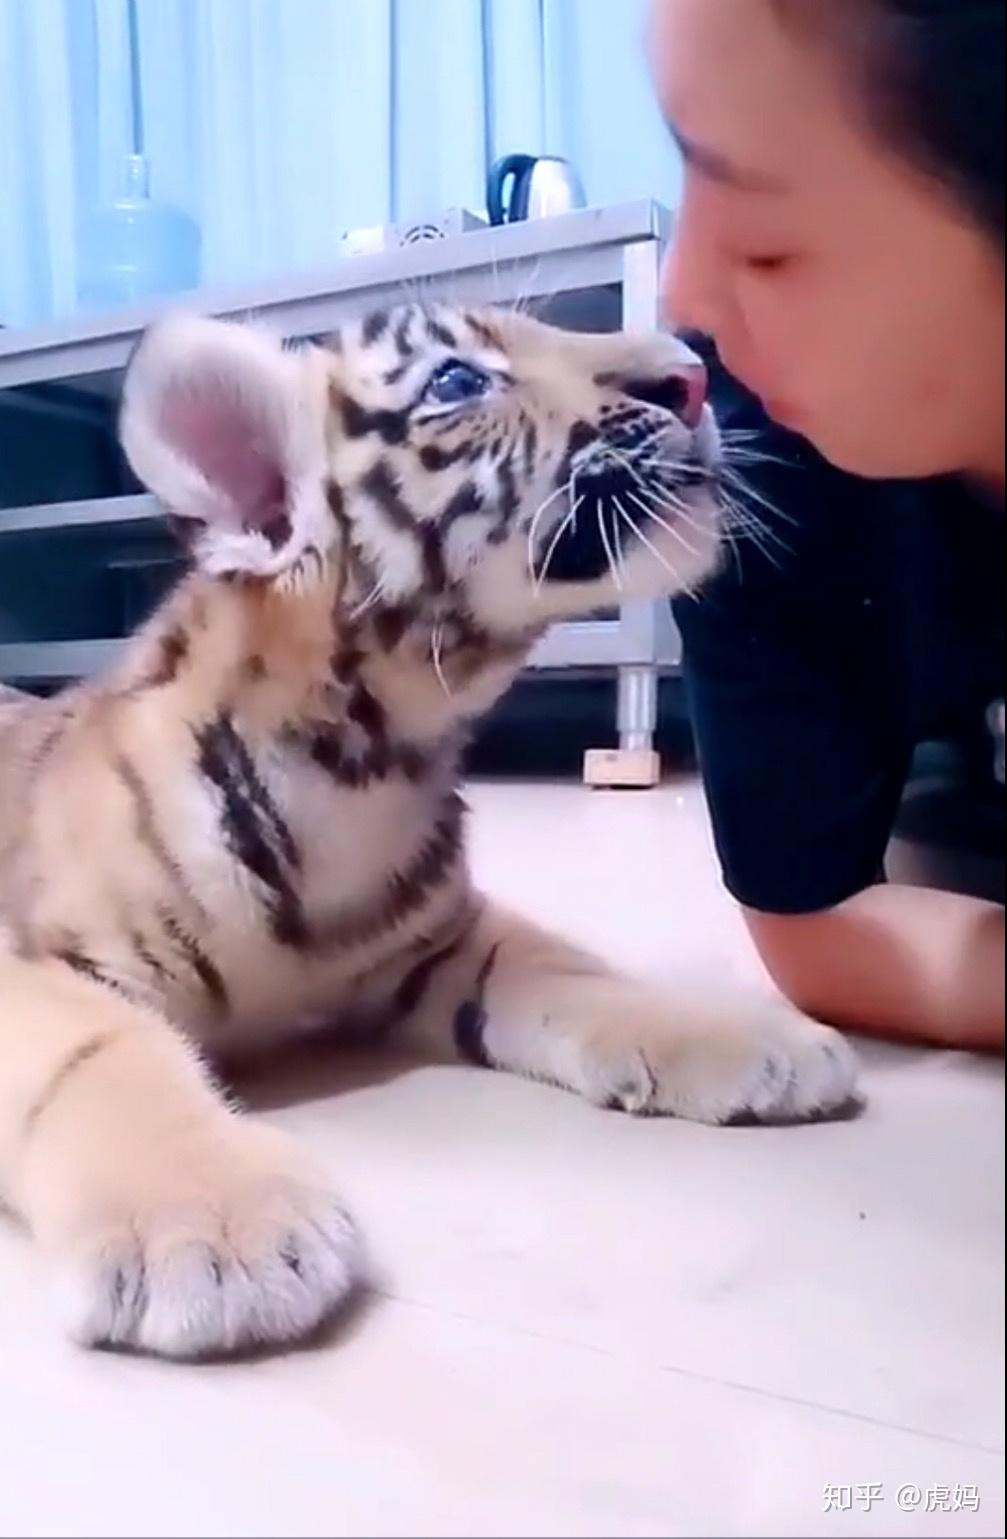 如果养一只小老虎每天抱着他一百个深蹲那么随着他长大是不是有一天我